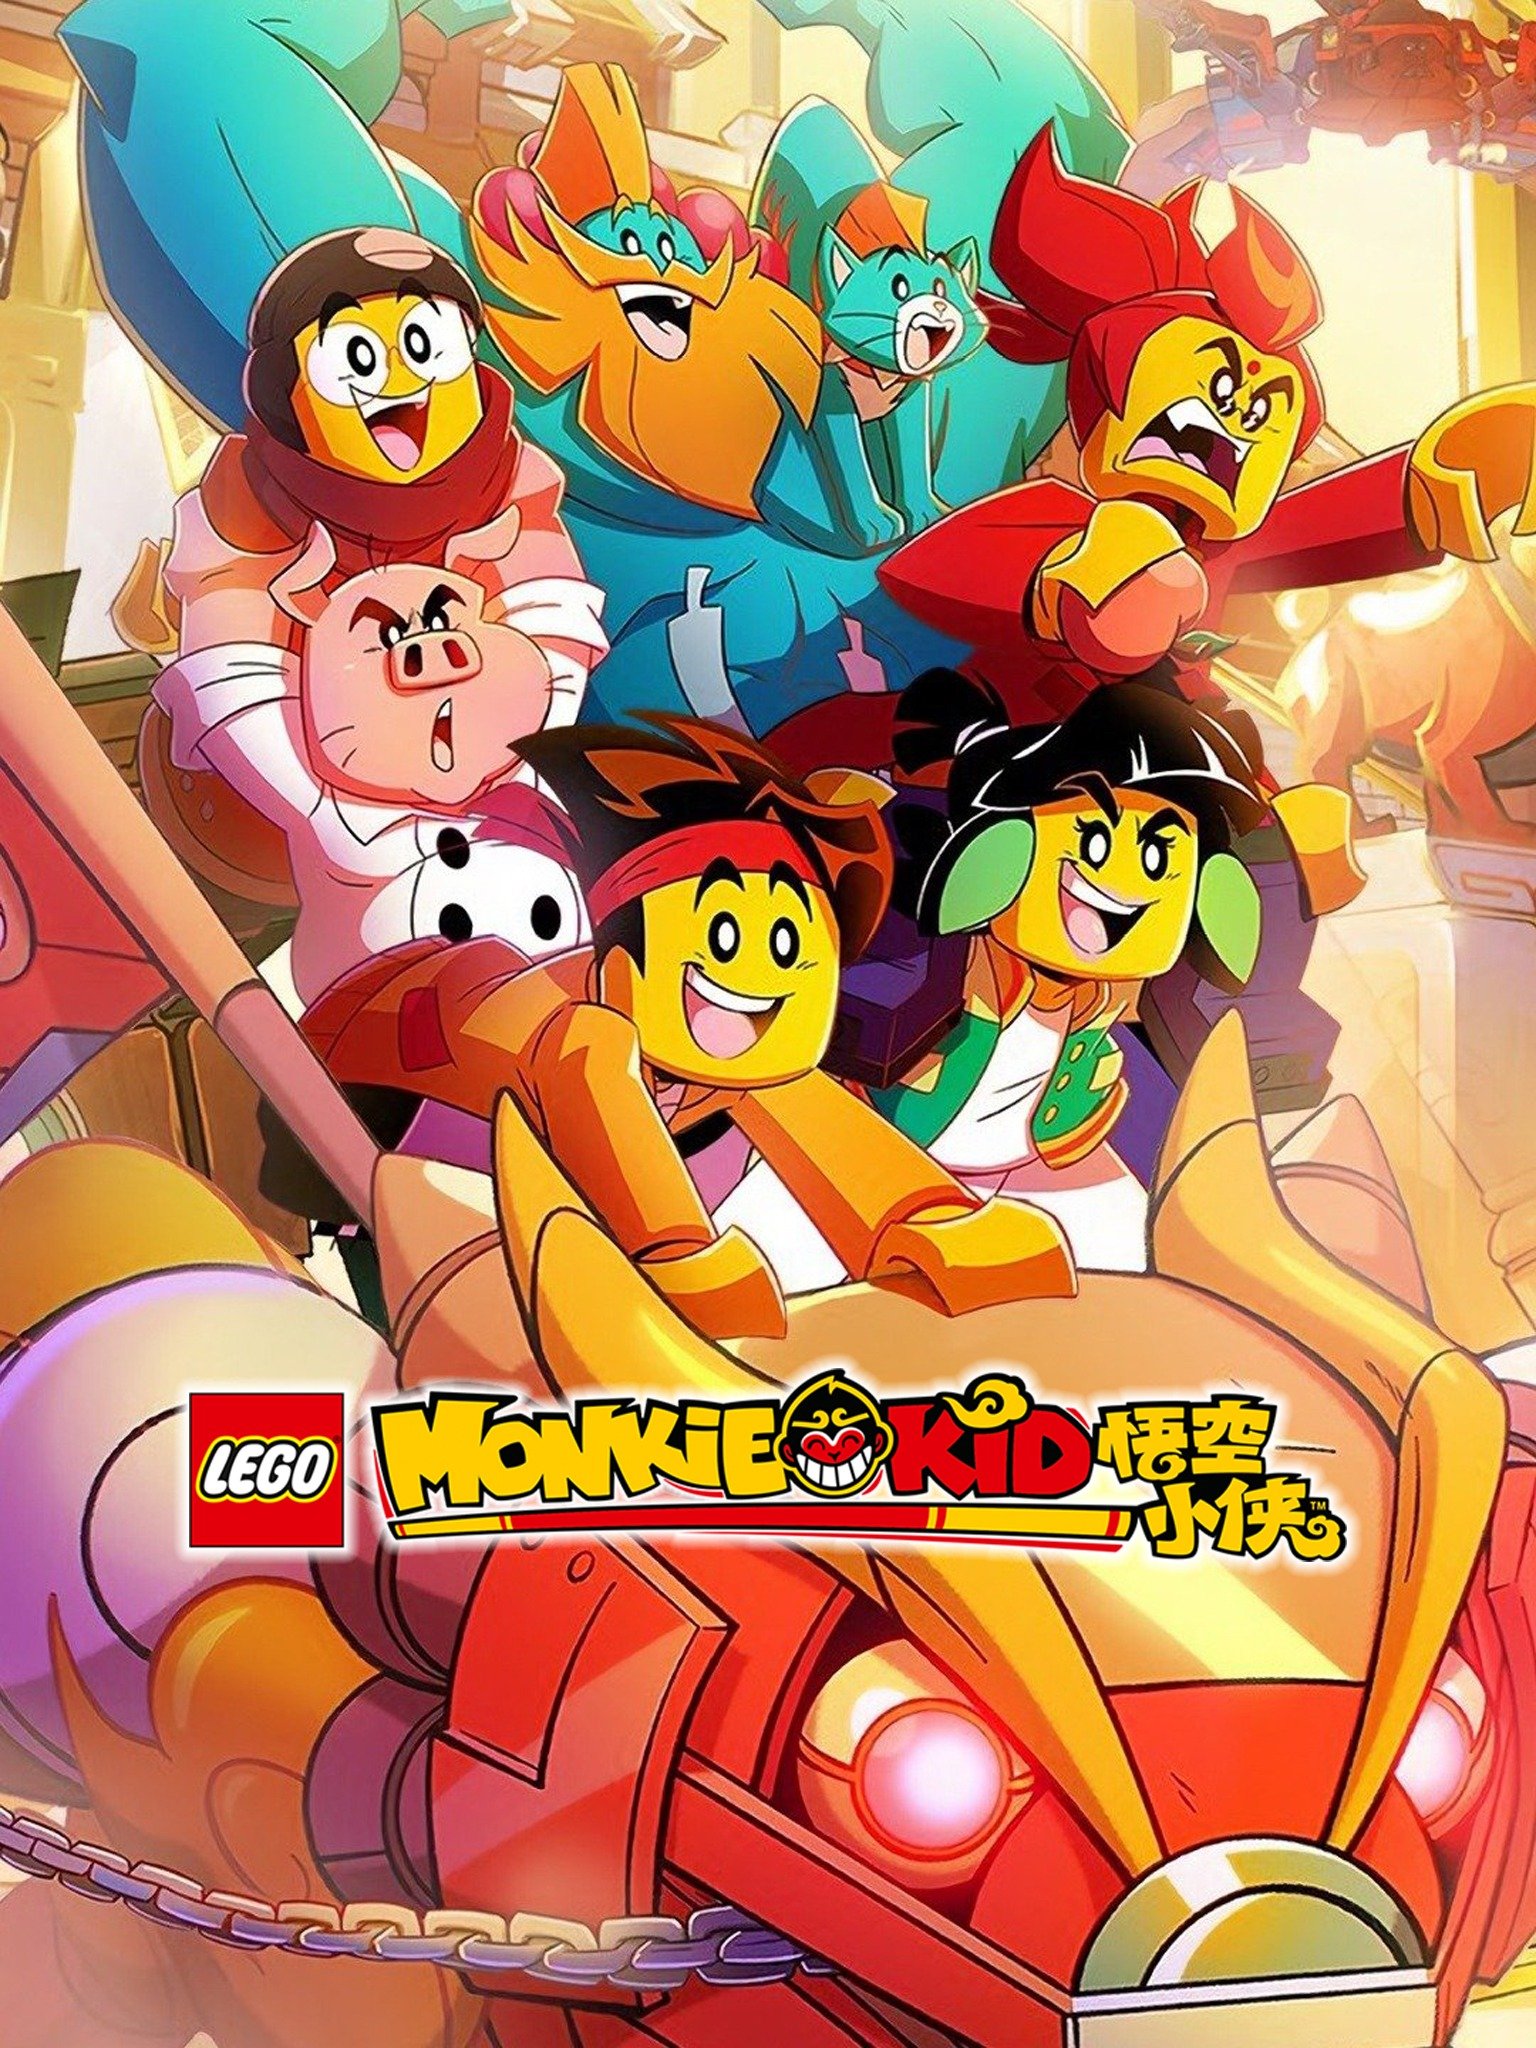 LEGO Monkie Kid - Rotten Tomatoes